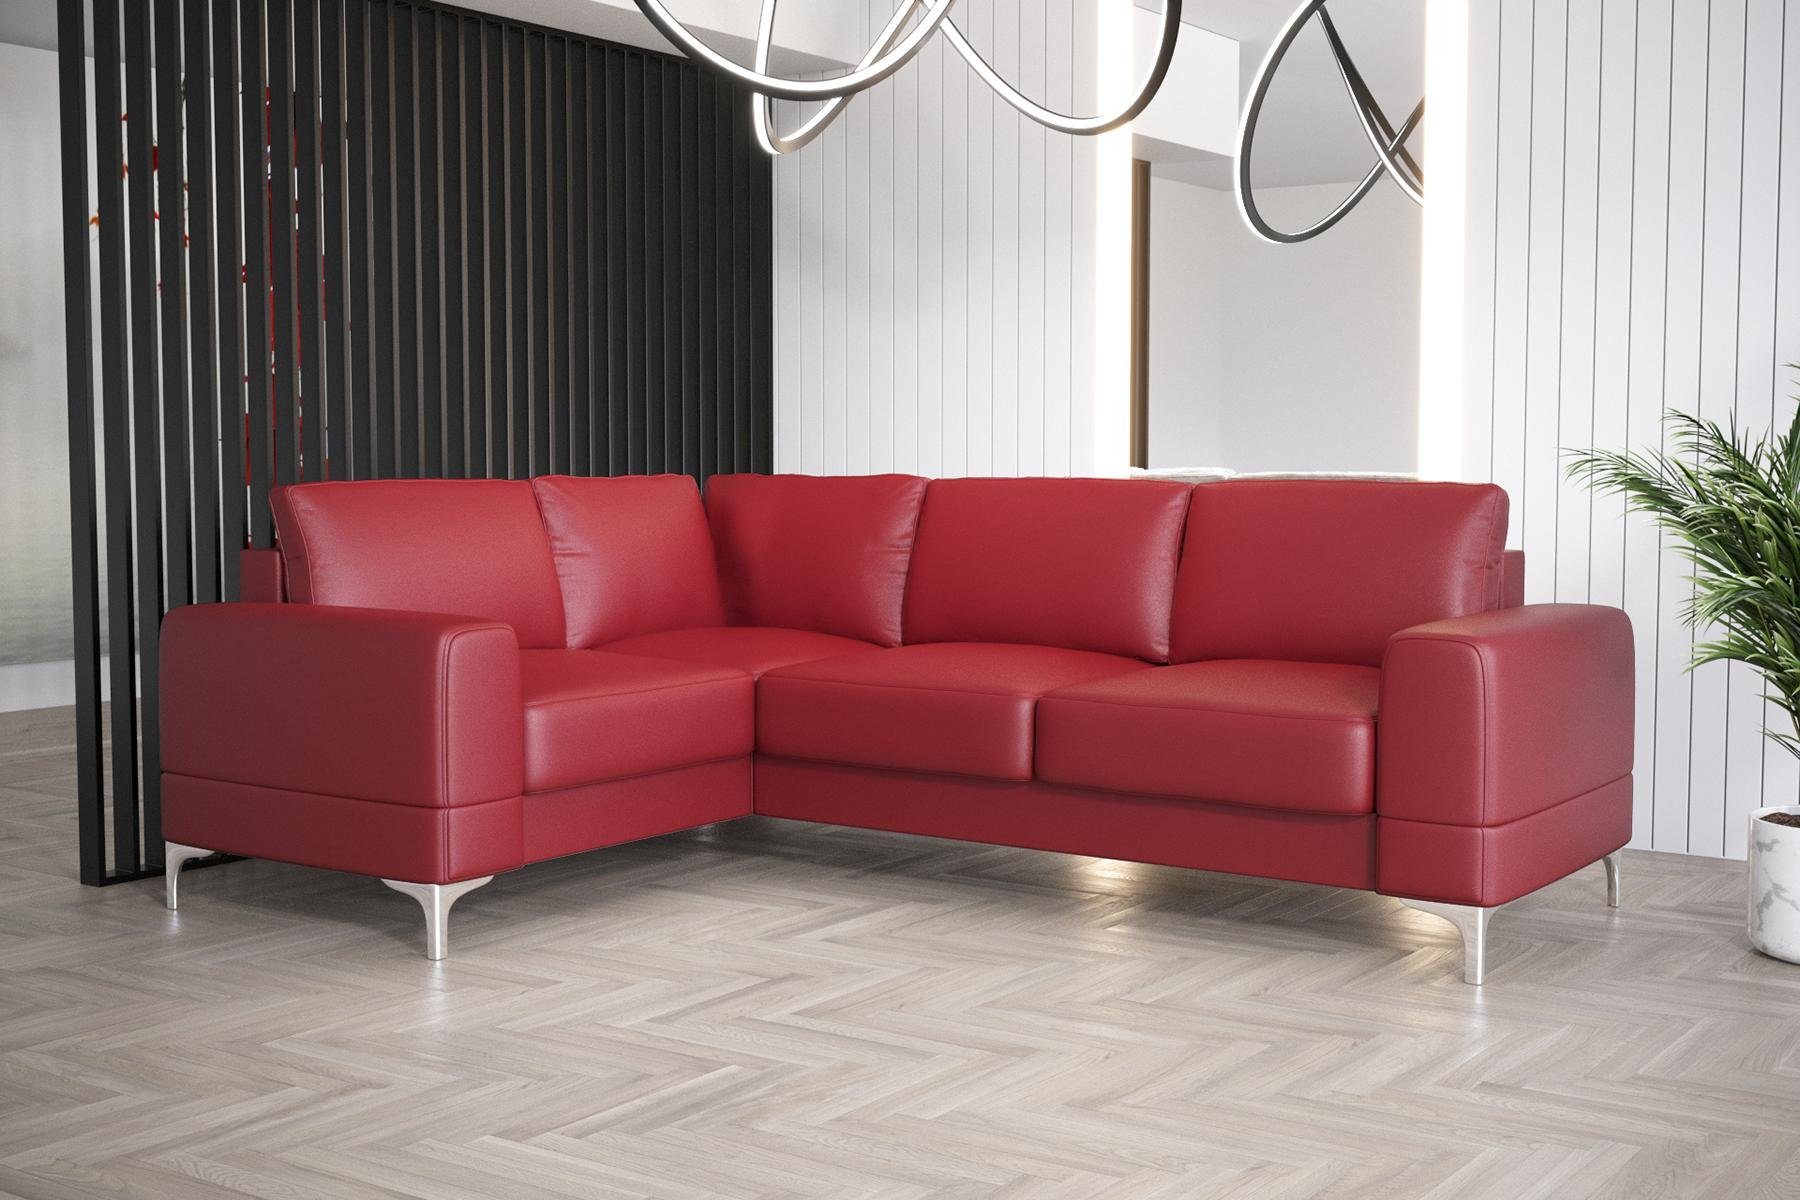 JVmoebel Ecksofa Wohnzimmer Sofa L-Form Möbel Modern Luxus Ecksofa Couch, Made in Europe Rot